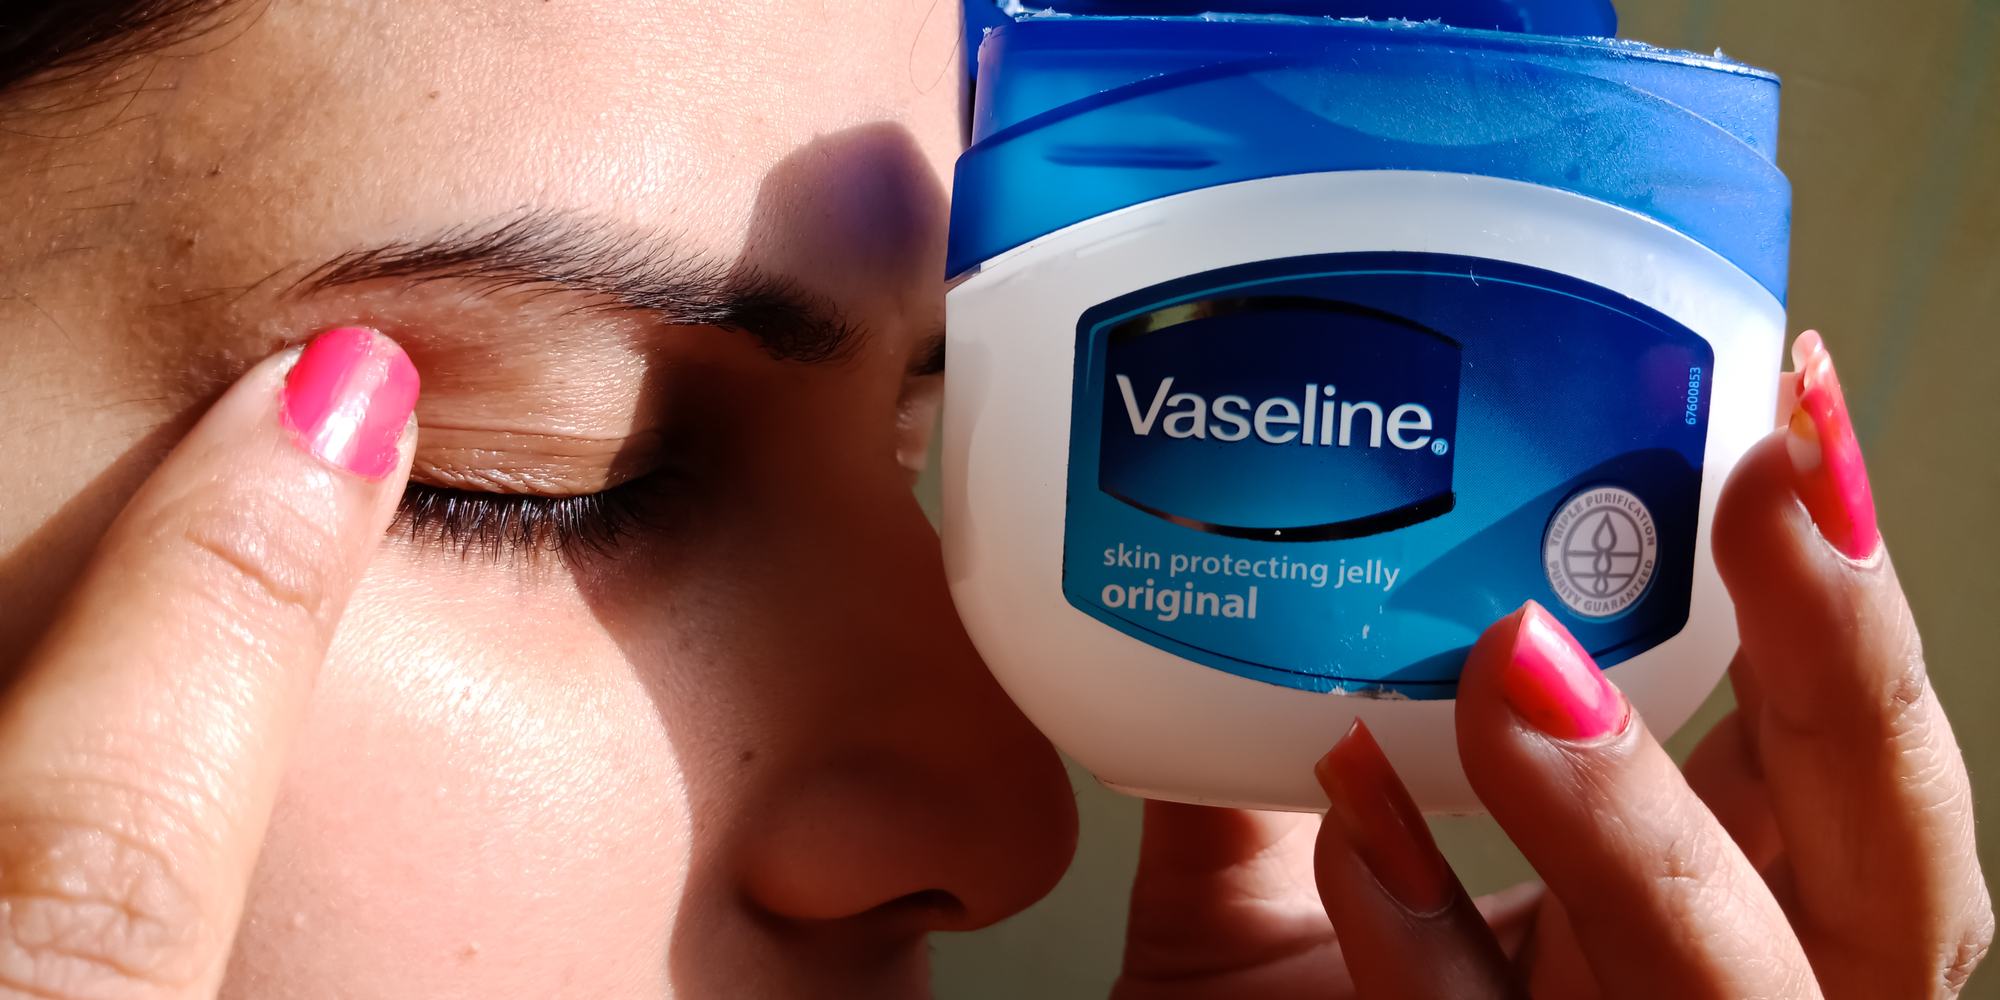 Does Vaseline Grow Your Eyelashes?